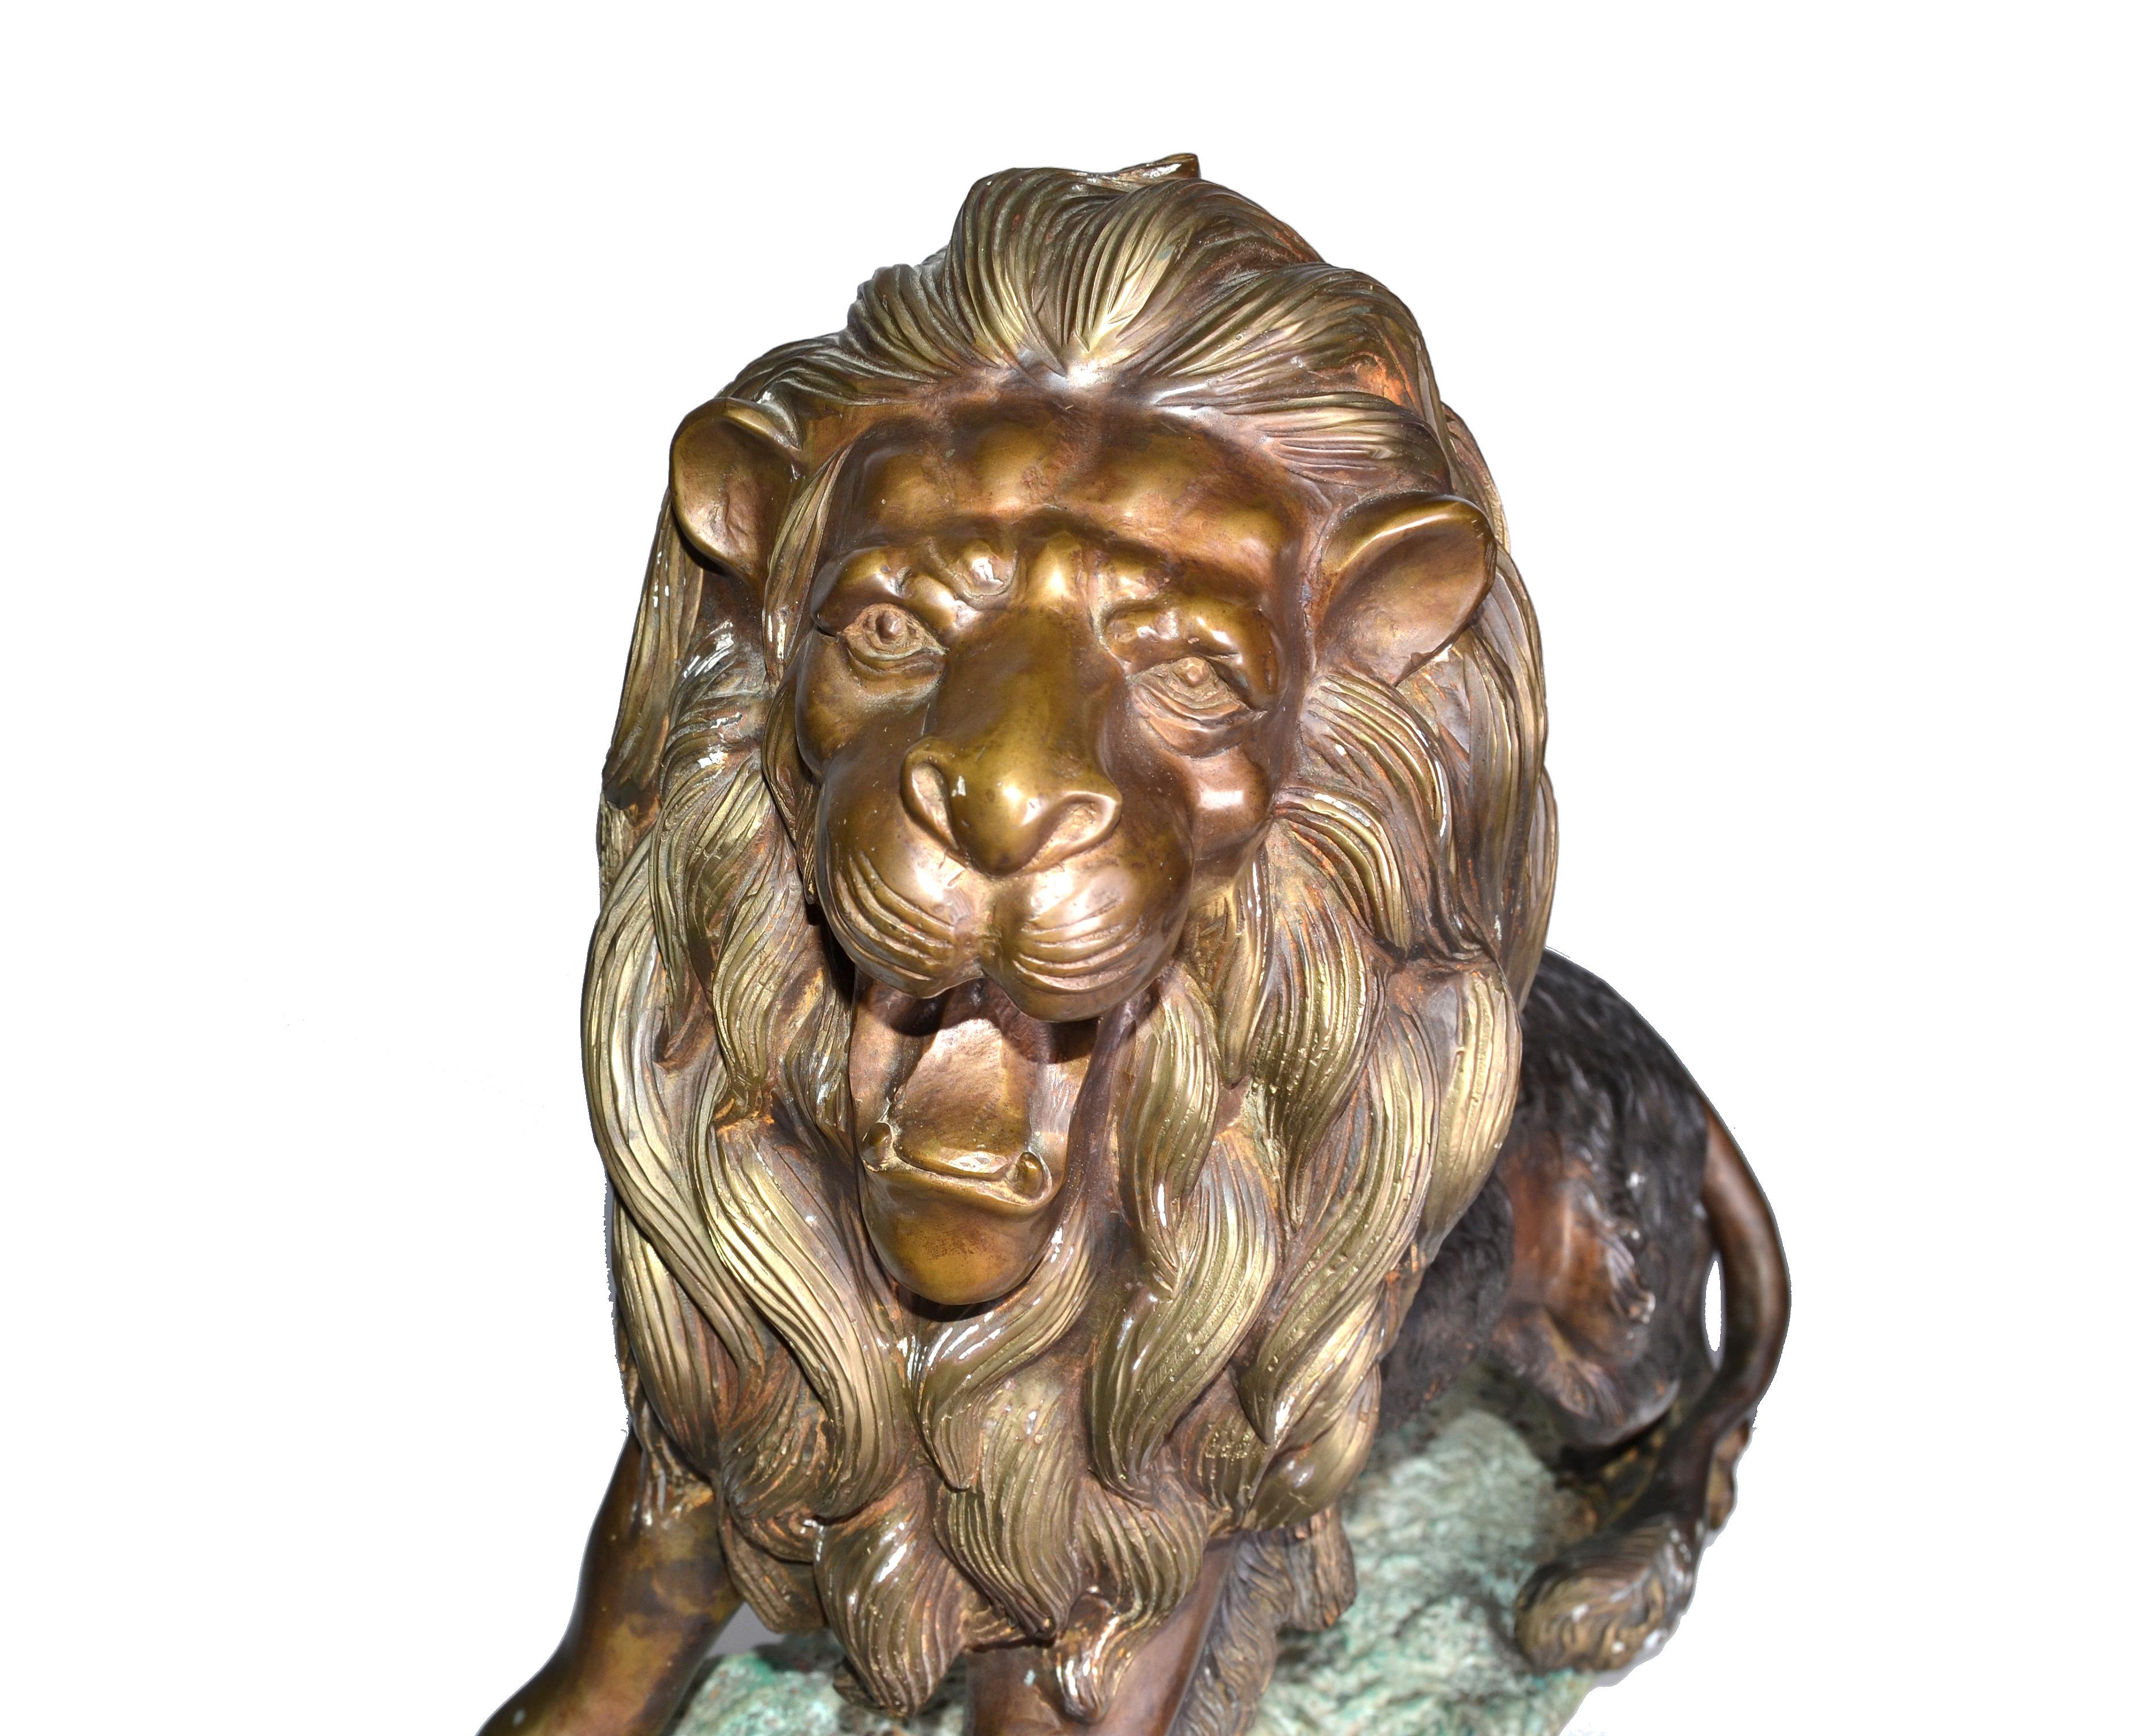 Neoklassische Französisch große und sehr schwere massive Bronze Löwe auf einem Marmorsockel.
Keine Markierungen.
Sehr detailliert und schön gemacht.